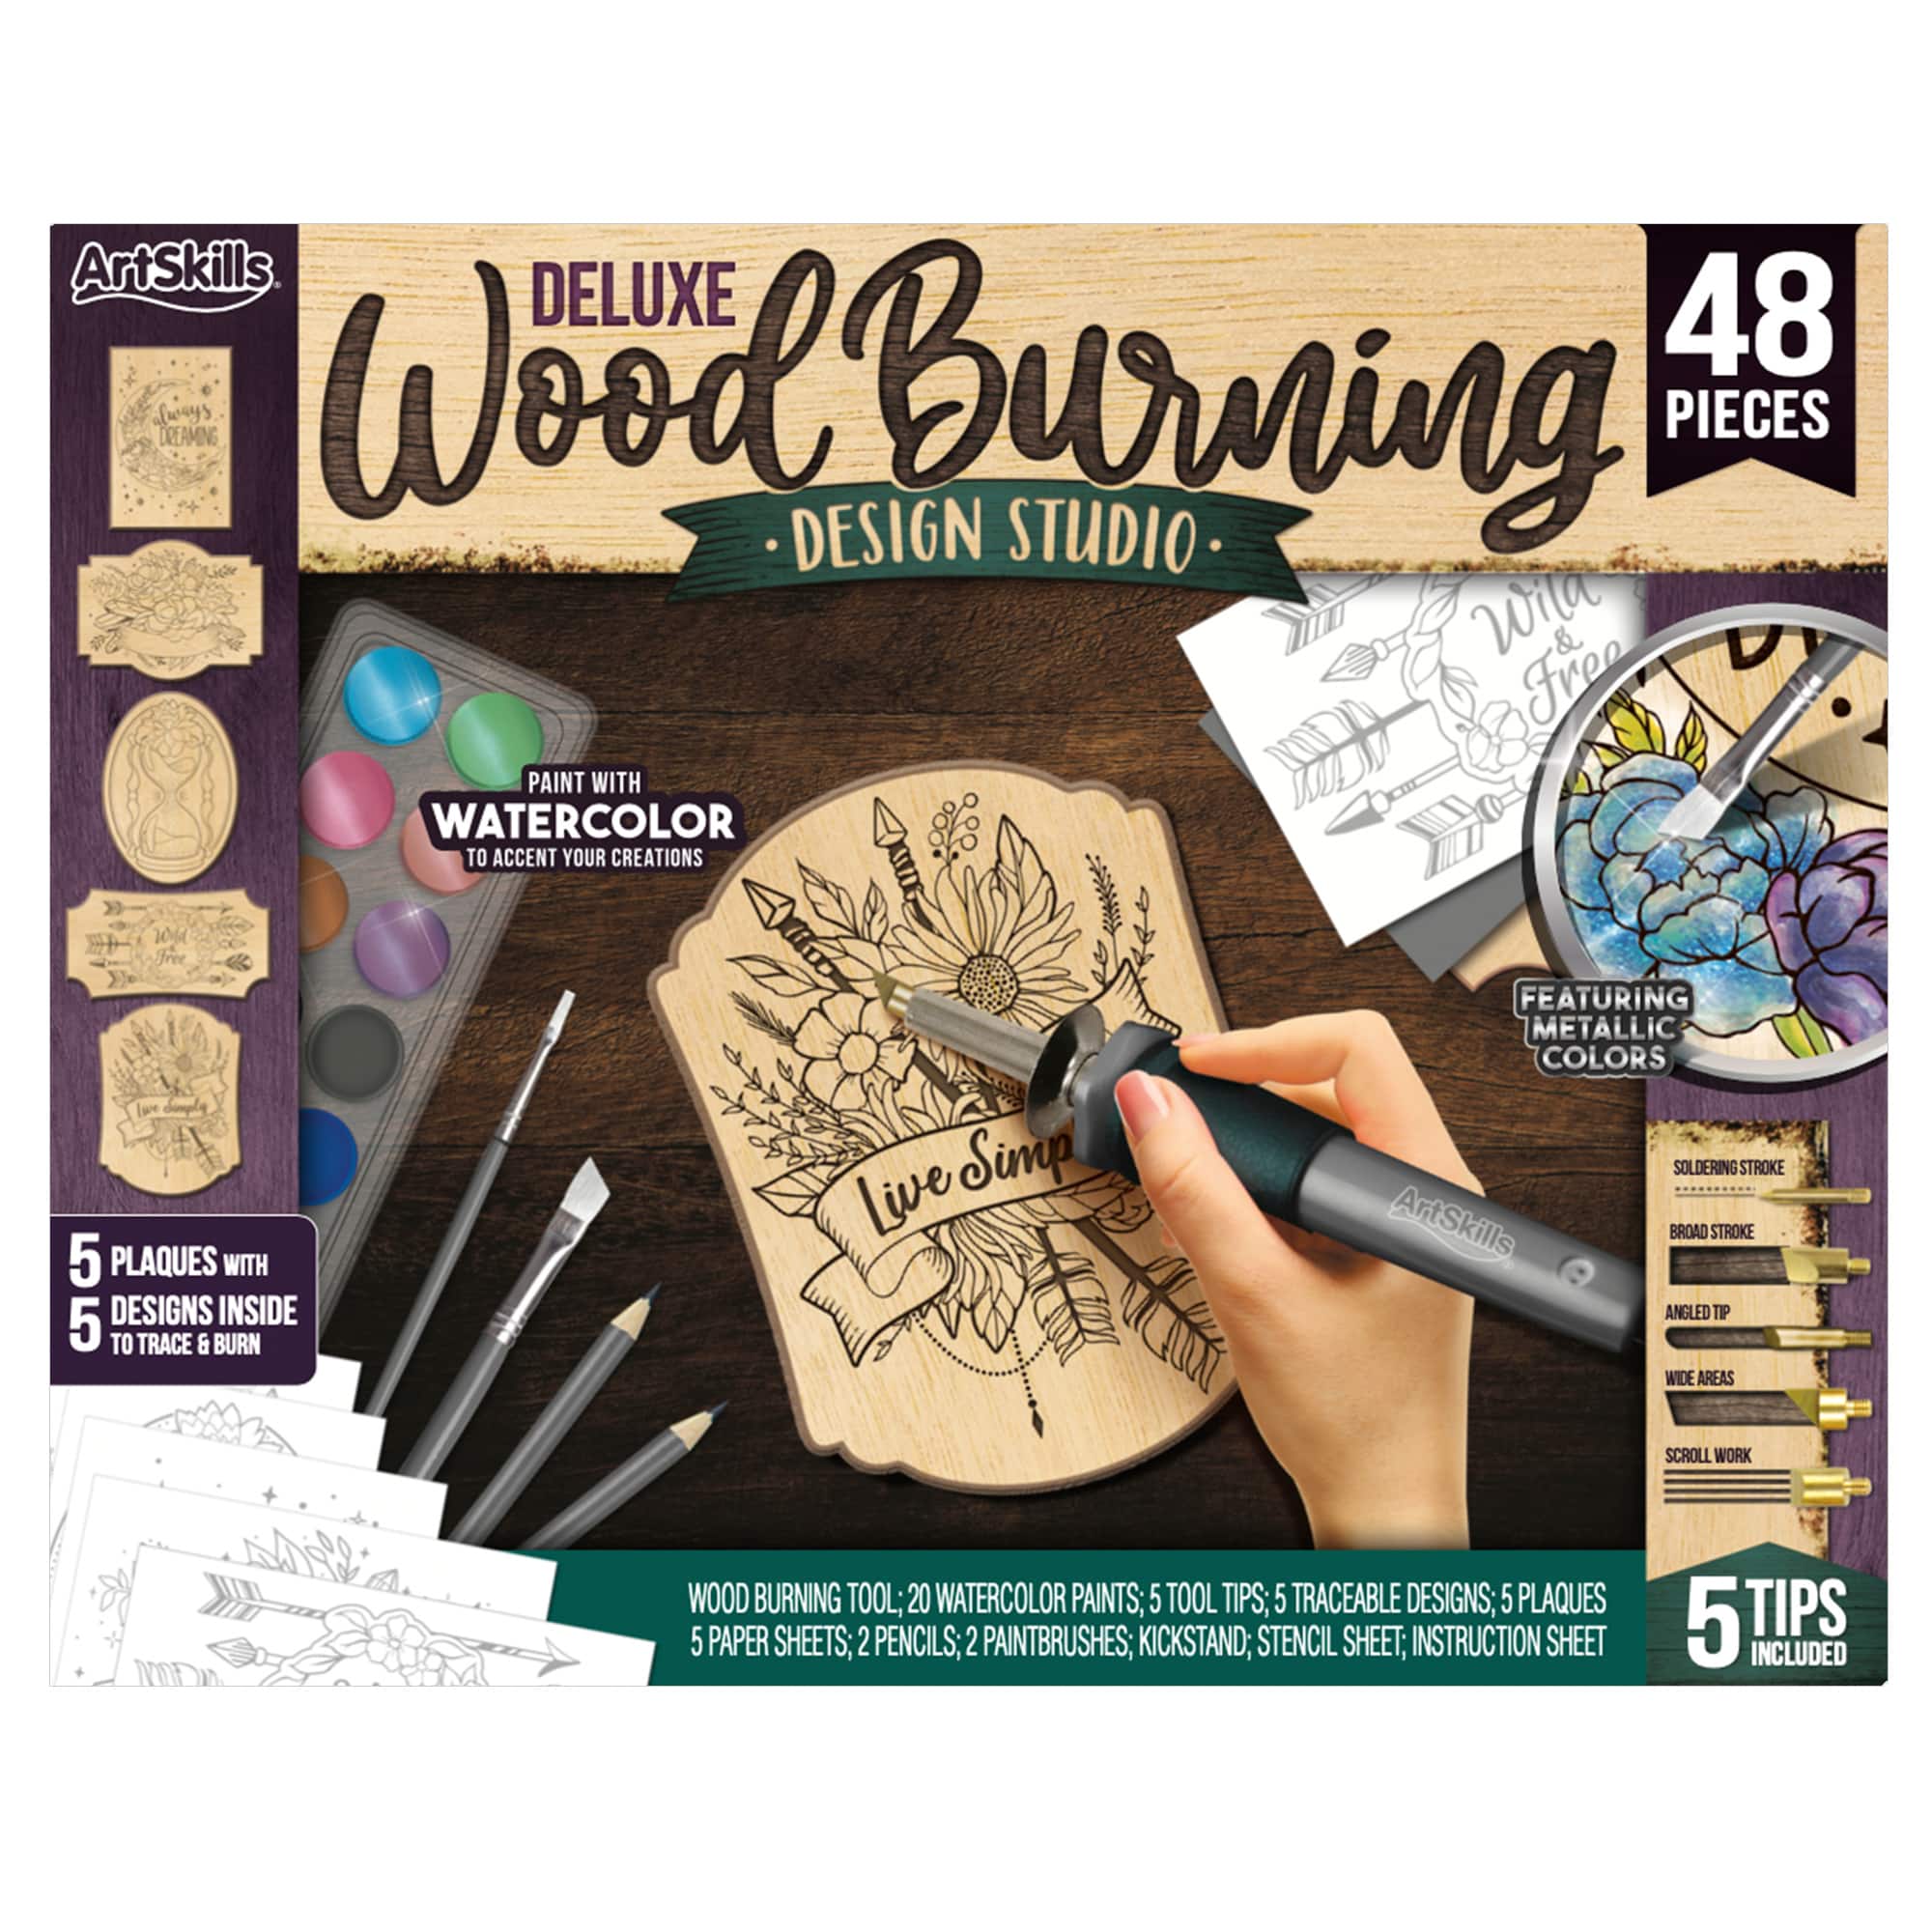 ArtSkills&#xAE; Wood Burning Kit for Beginners